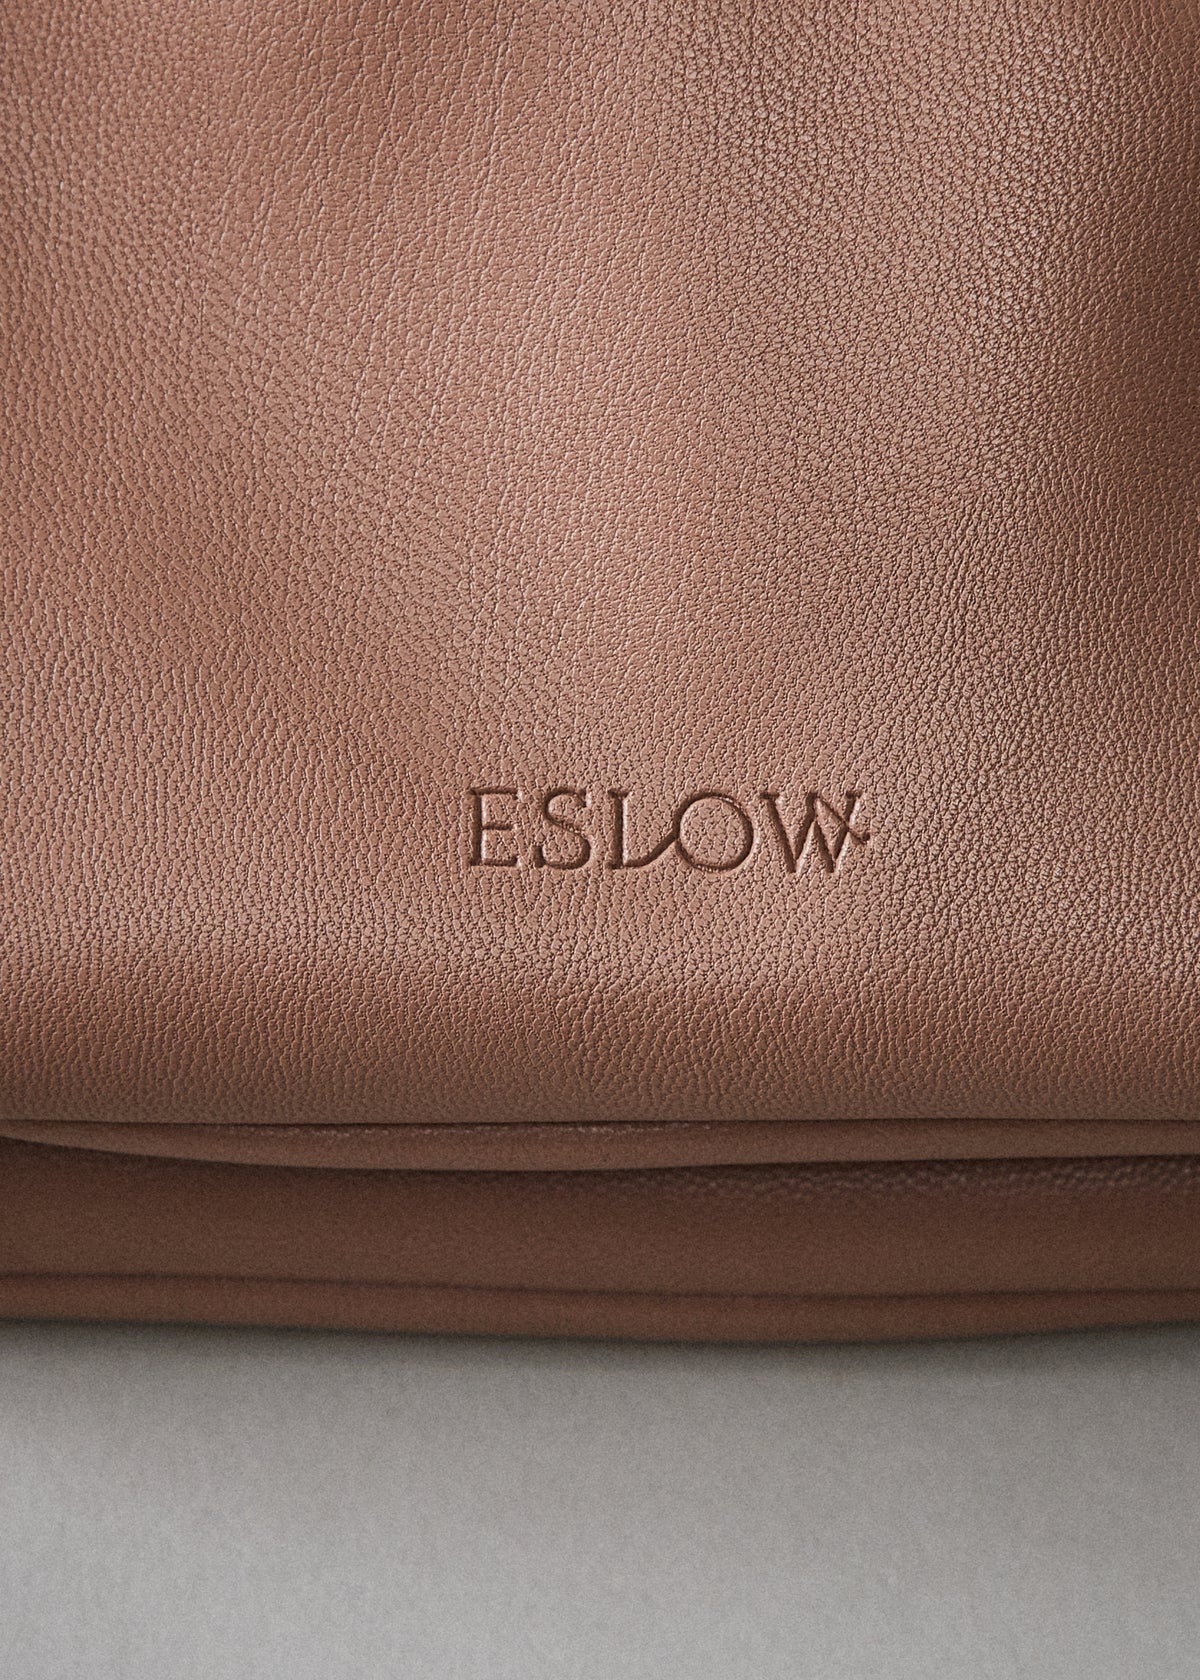 ESLOW(エスロー)ドローストリングバッグ-CAMEL | ESLOW ONLINE STORE